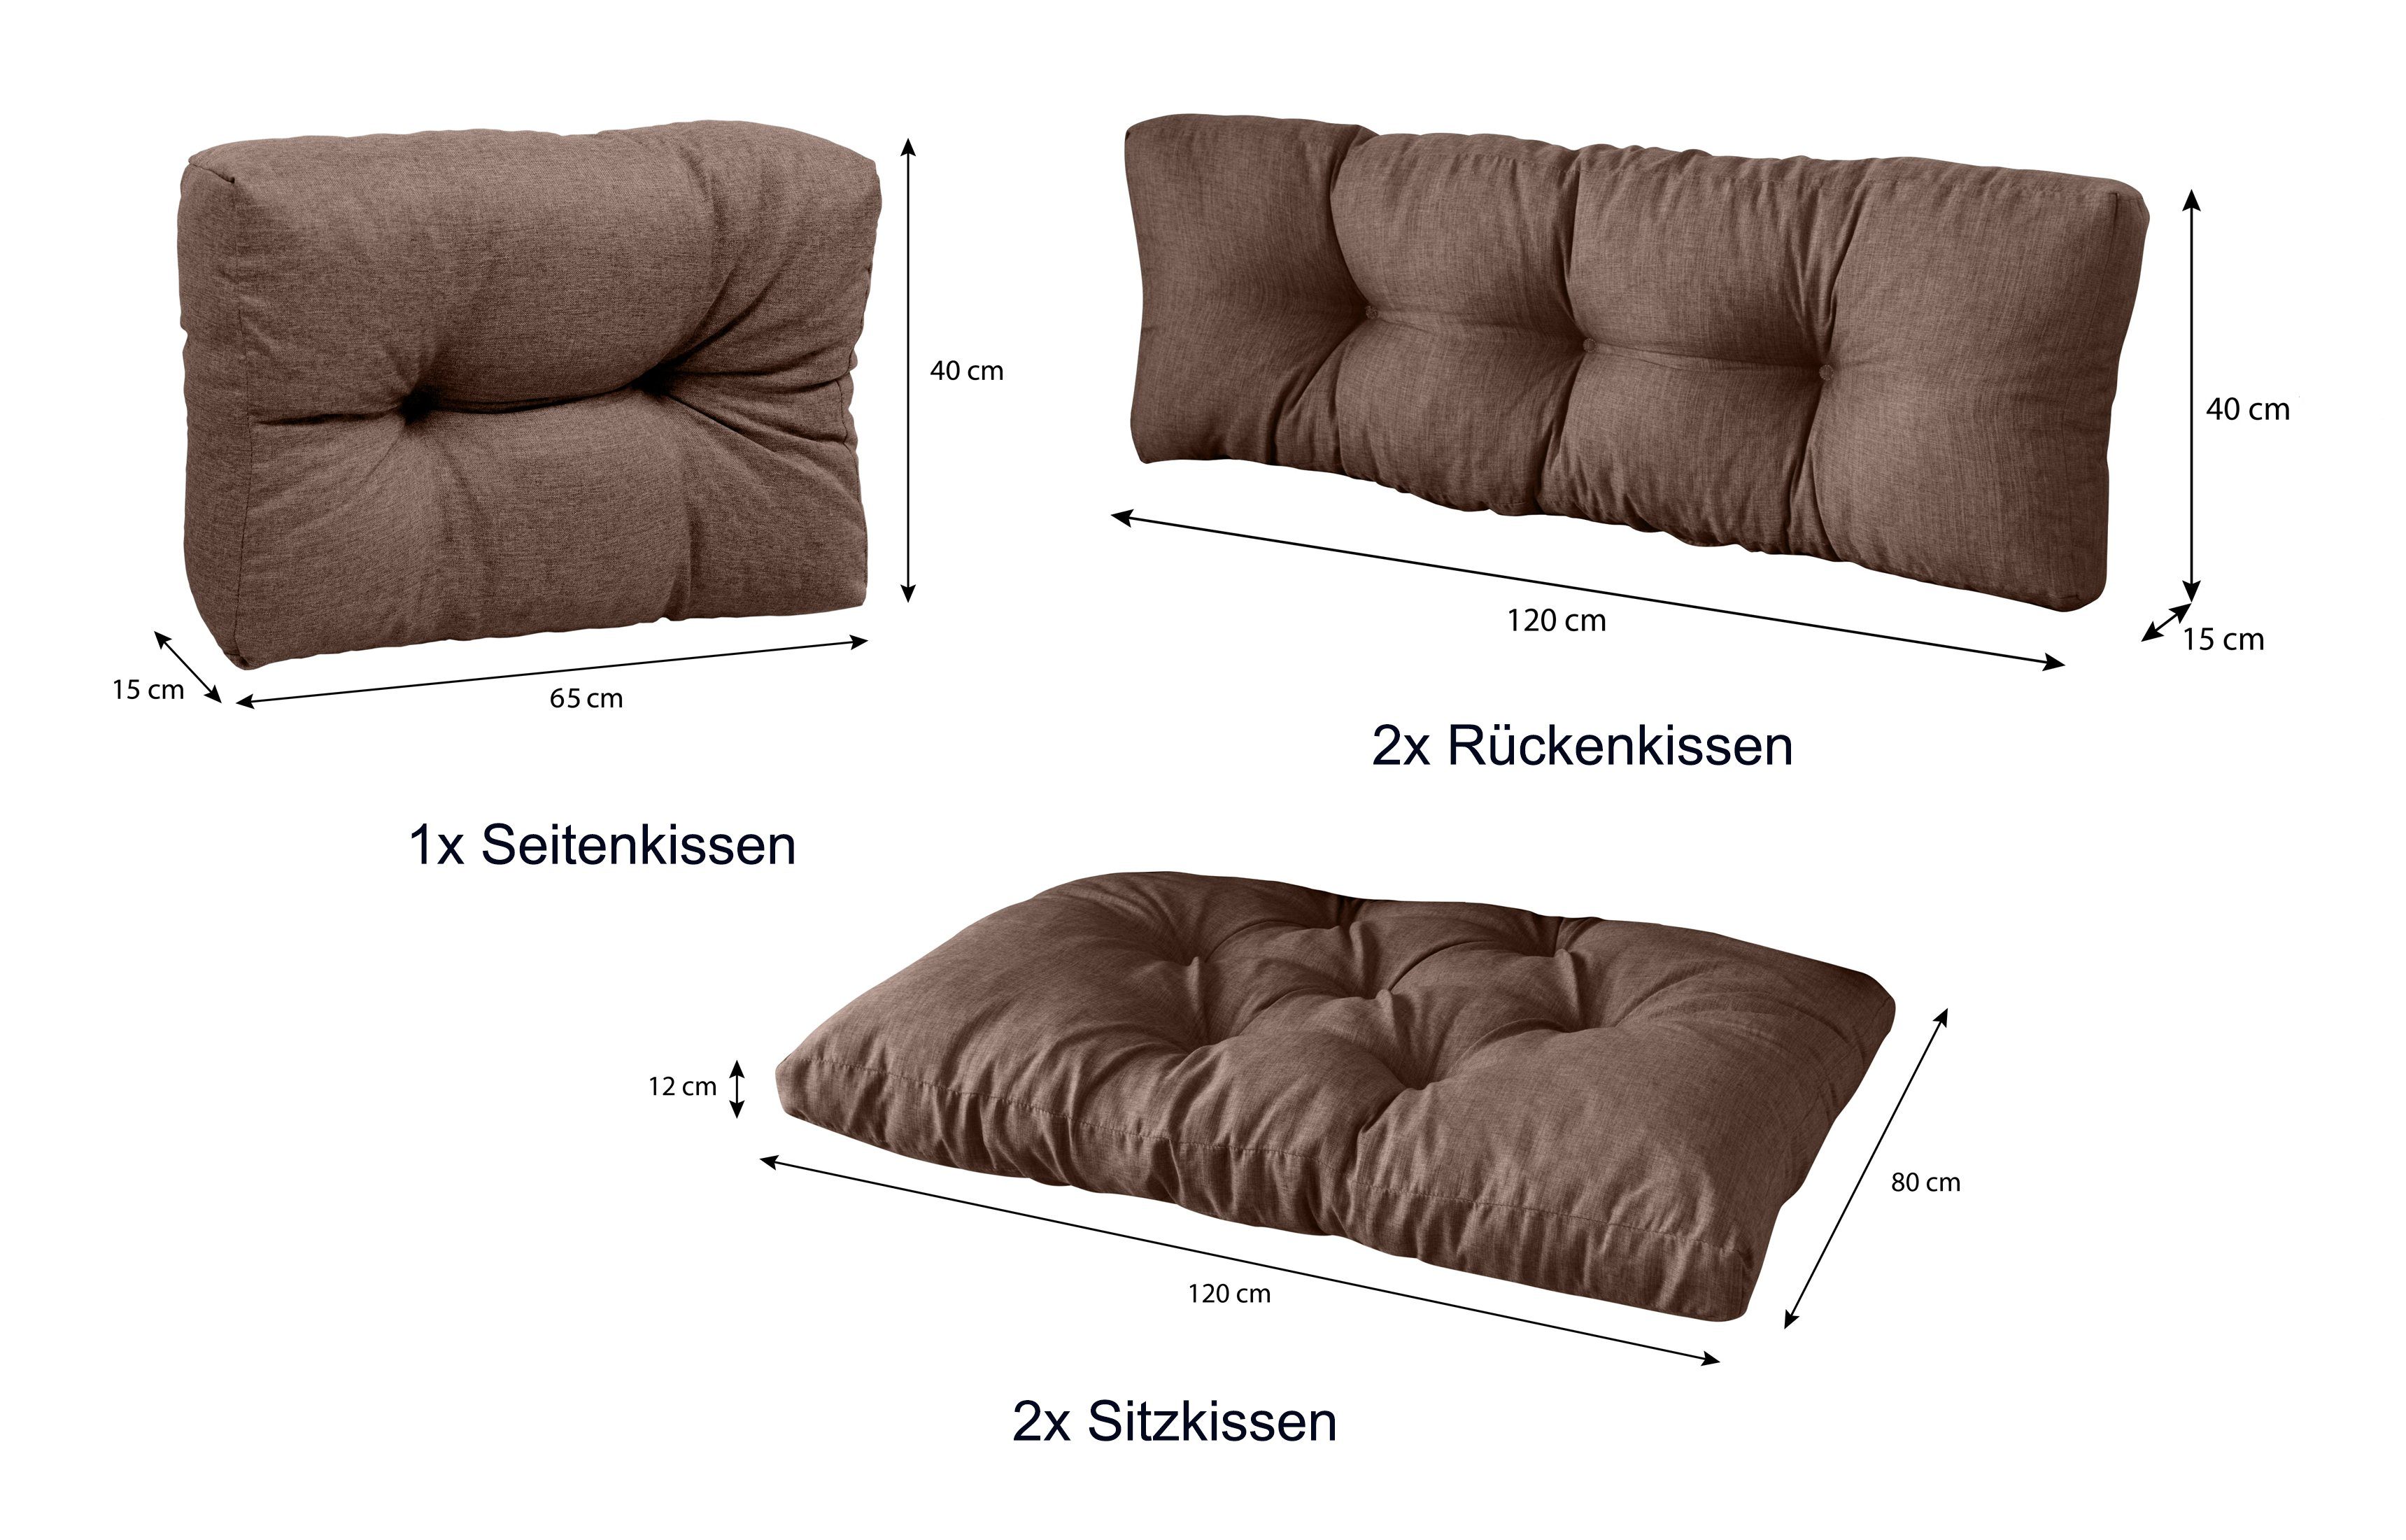 Braun palettencouch + 1x 5er 2x Seitenkissen, Set: Palettenkissen + 80 x Rückenkissen 2x sunnypillow Sitzkissen palettenmöbel 120 polsterauflage